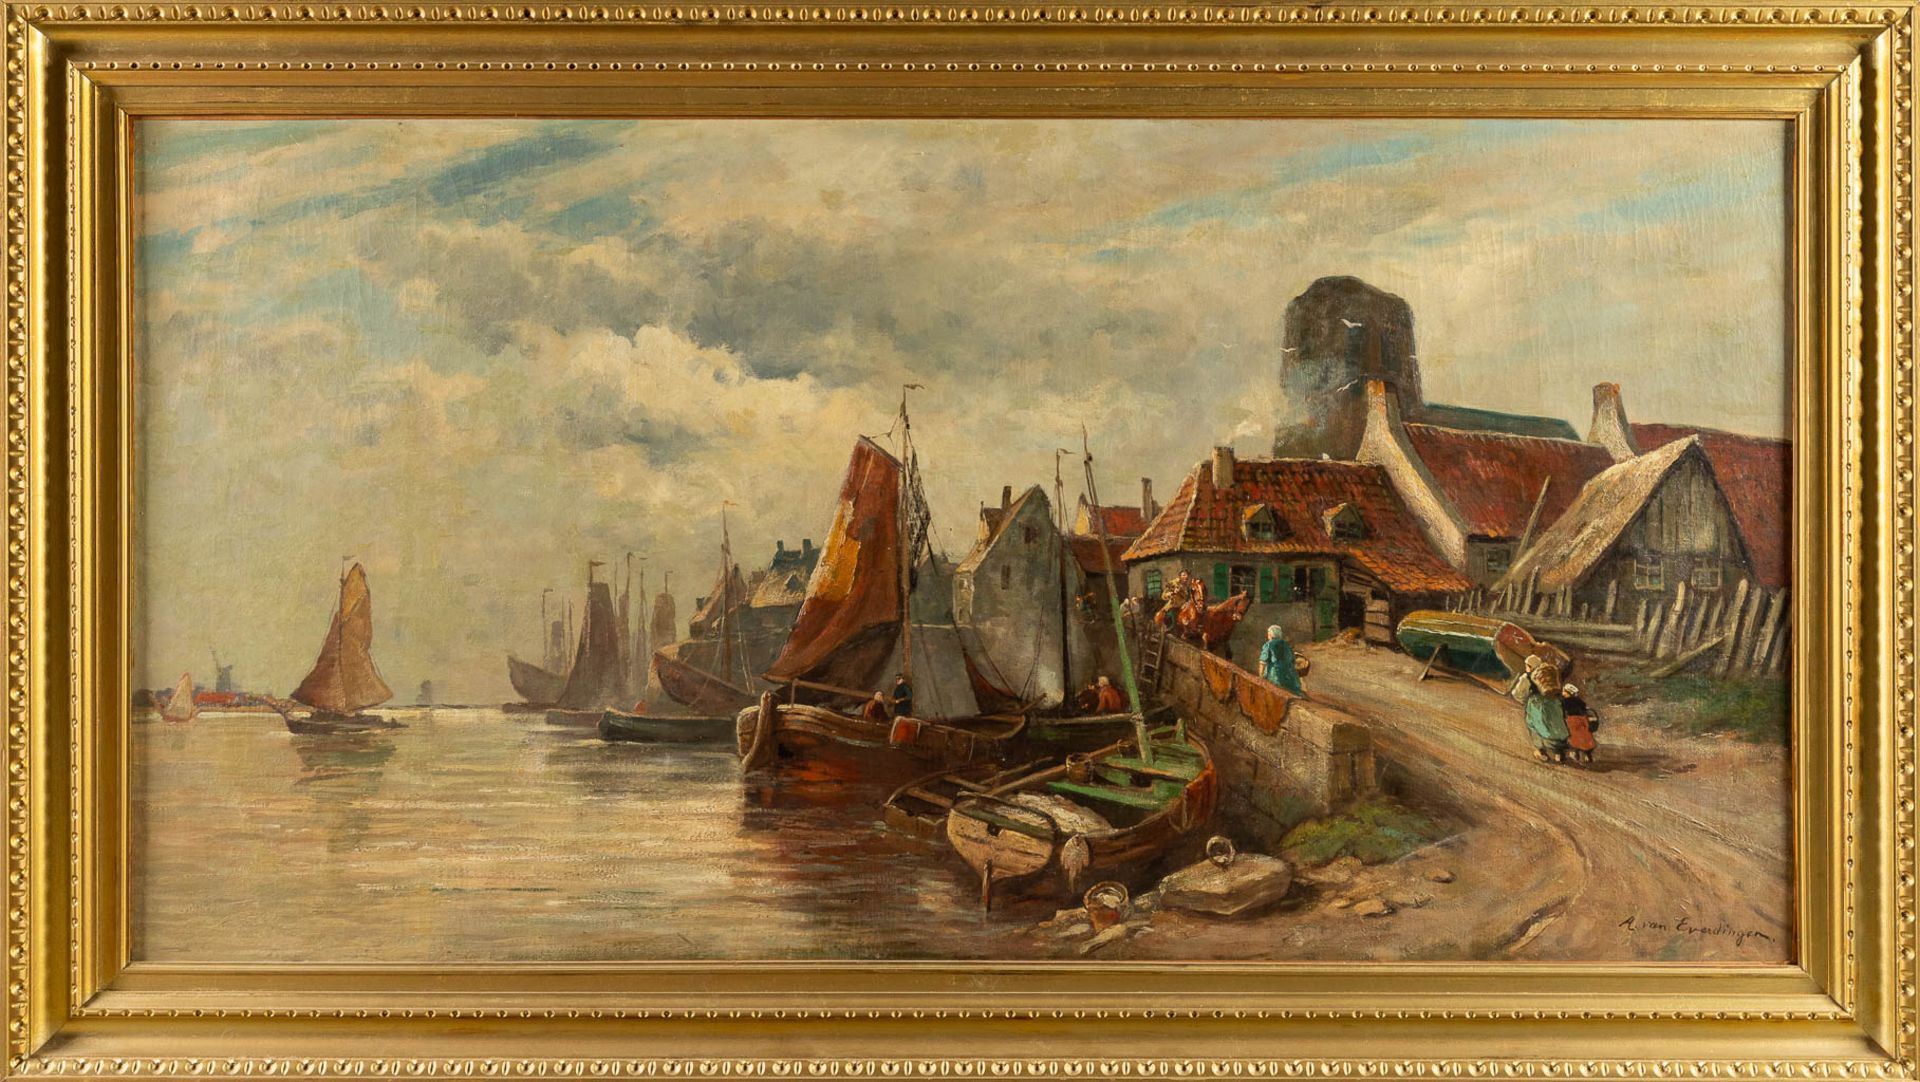 Adriaen VAN EVERDINGEN (1832-1912) 'Village near the river' oil on canvas. (W:171 x H:90 cm) - Image 3 of 8